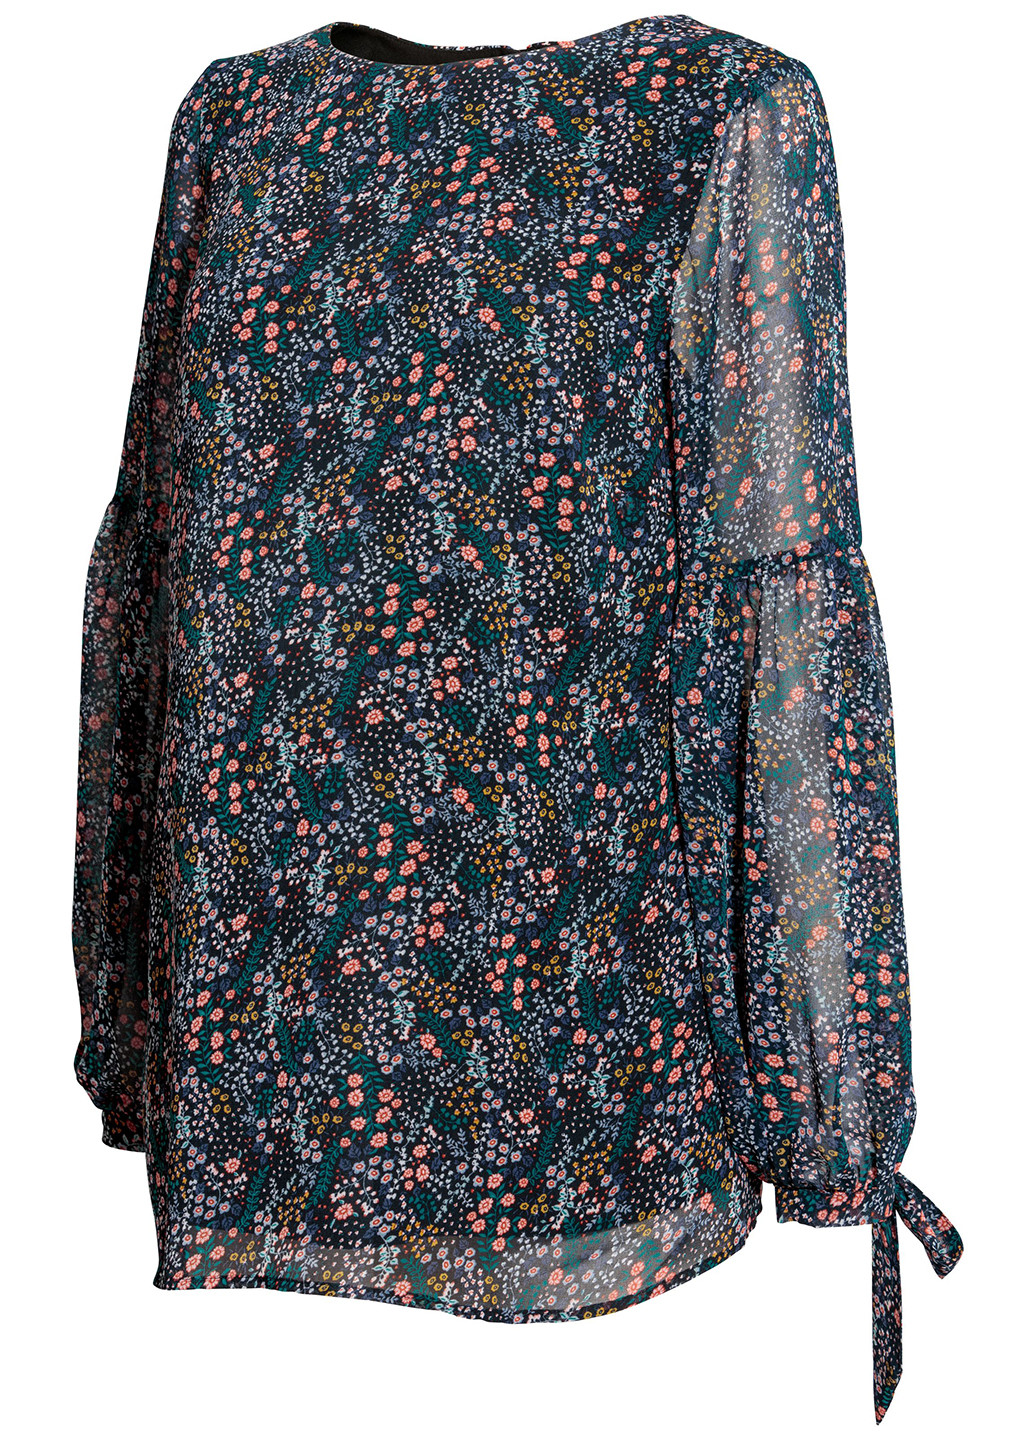 Комбинированная демисезонная блуза для беременных H&M